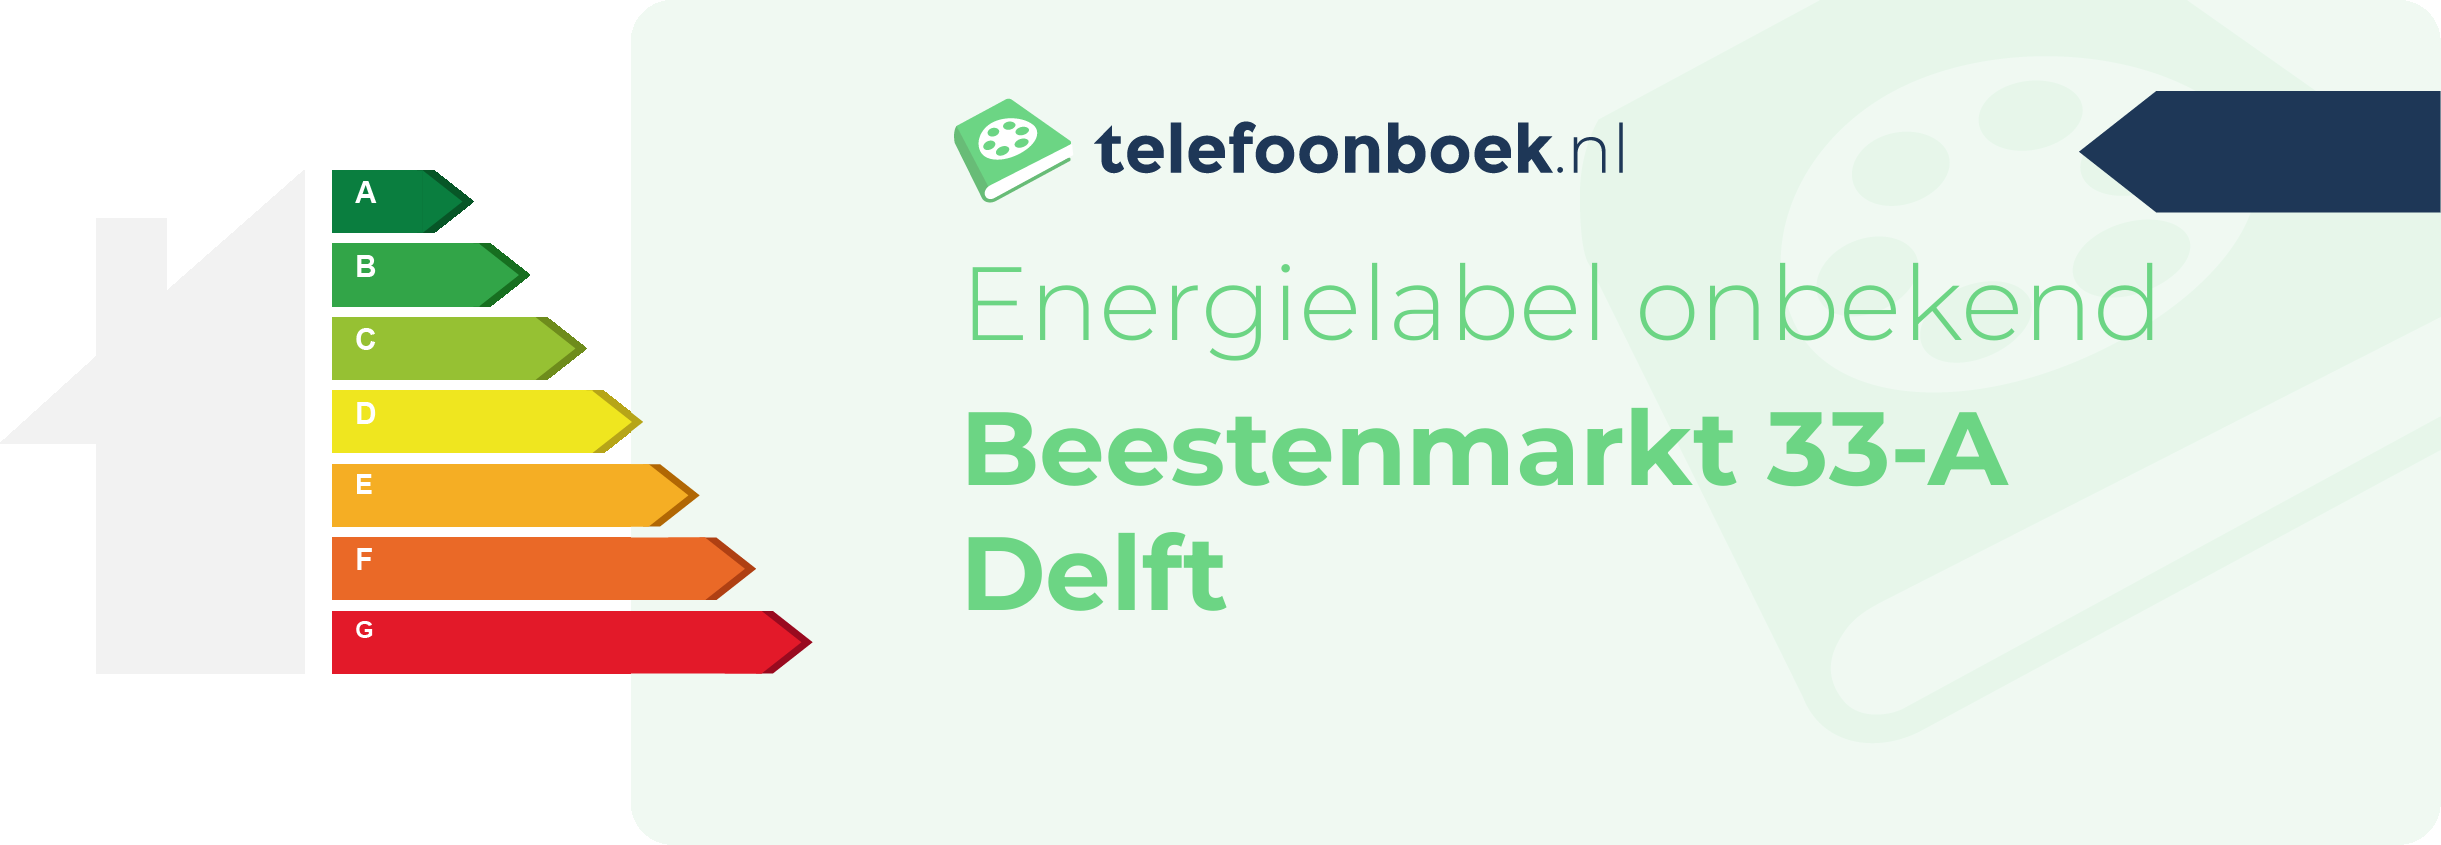 Energielabel Beestenmarkt 33-A Delft